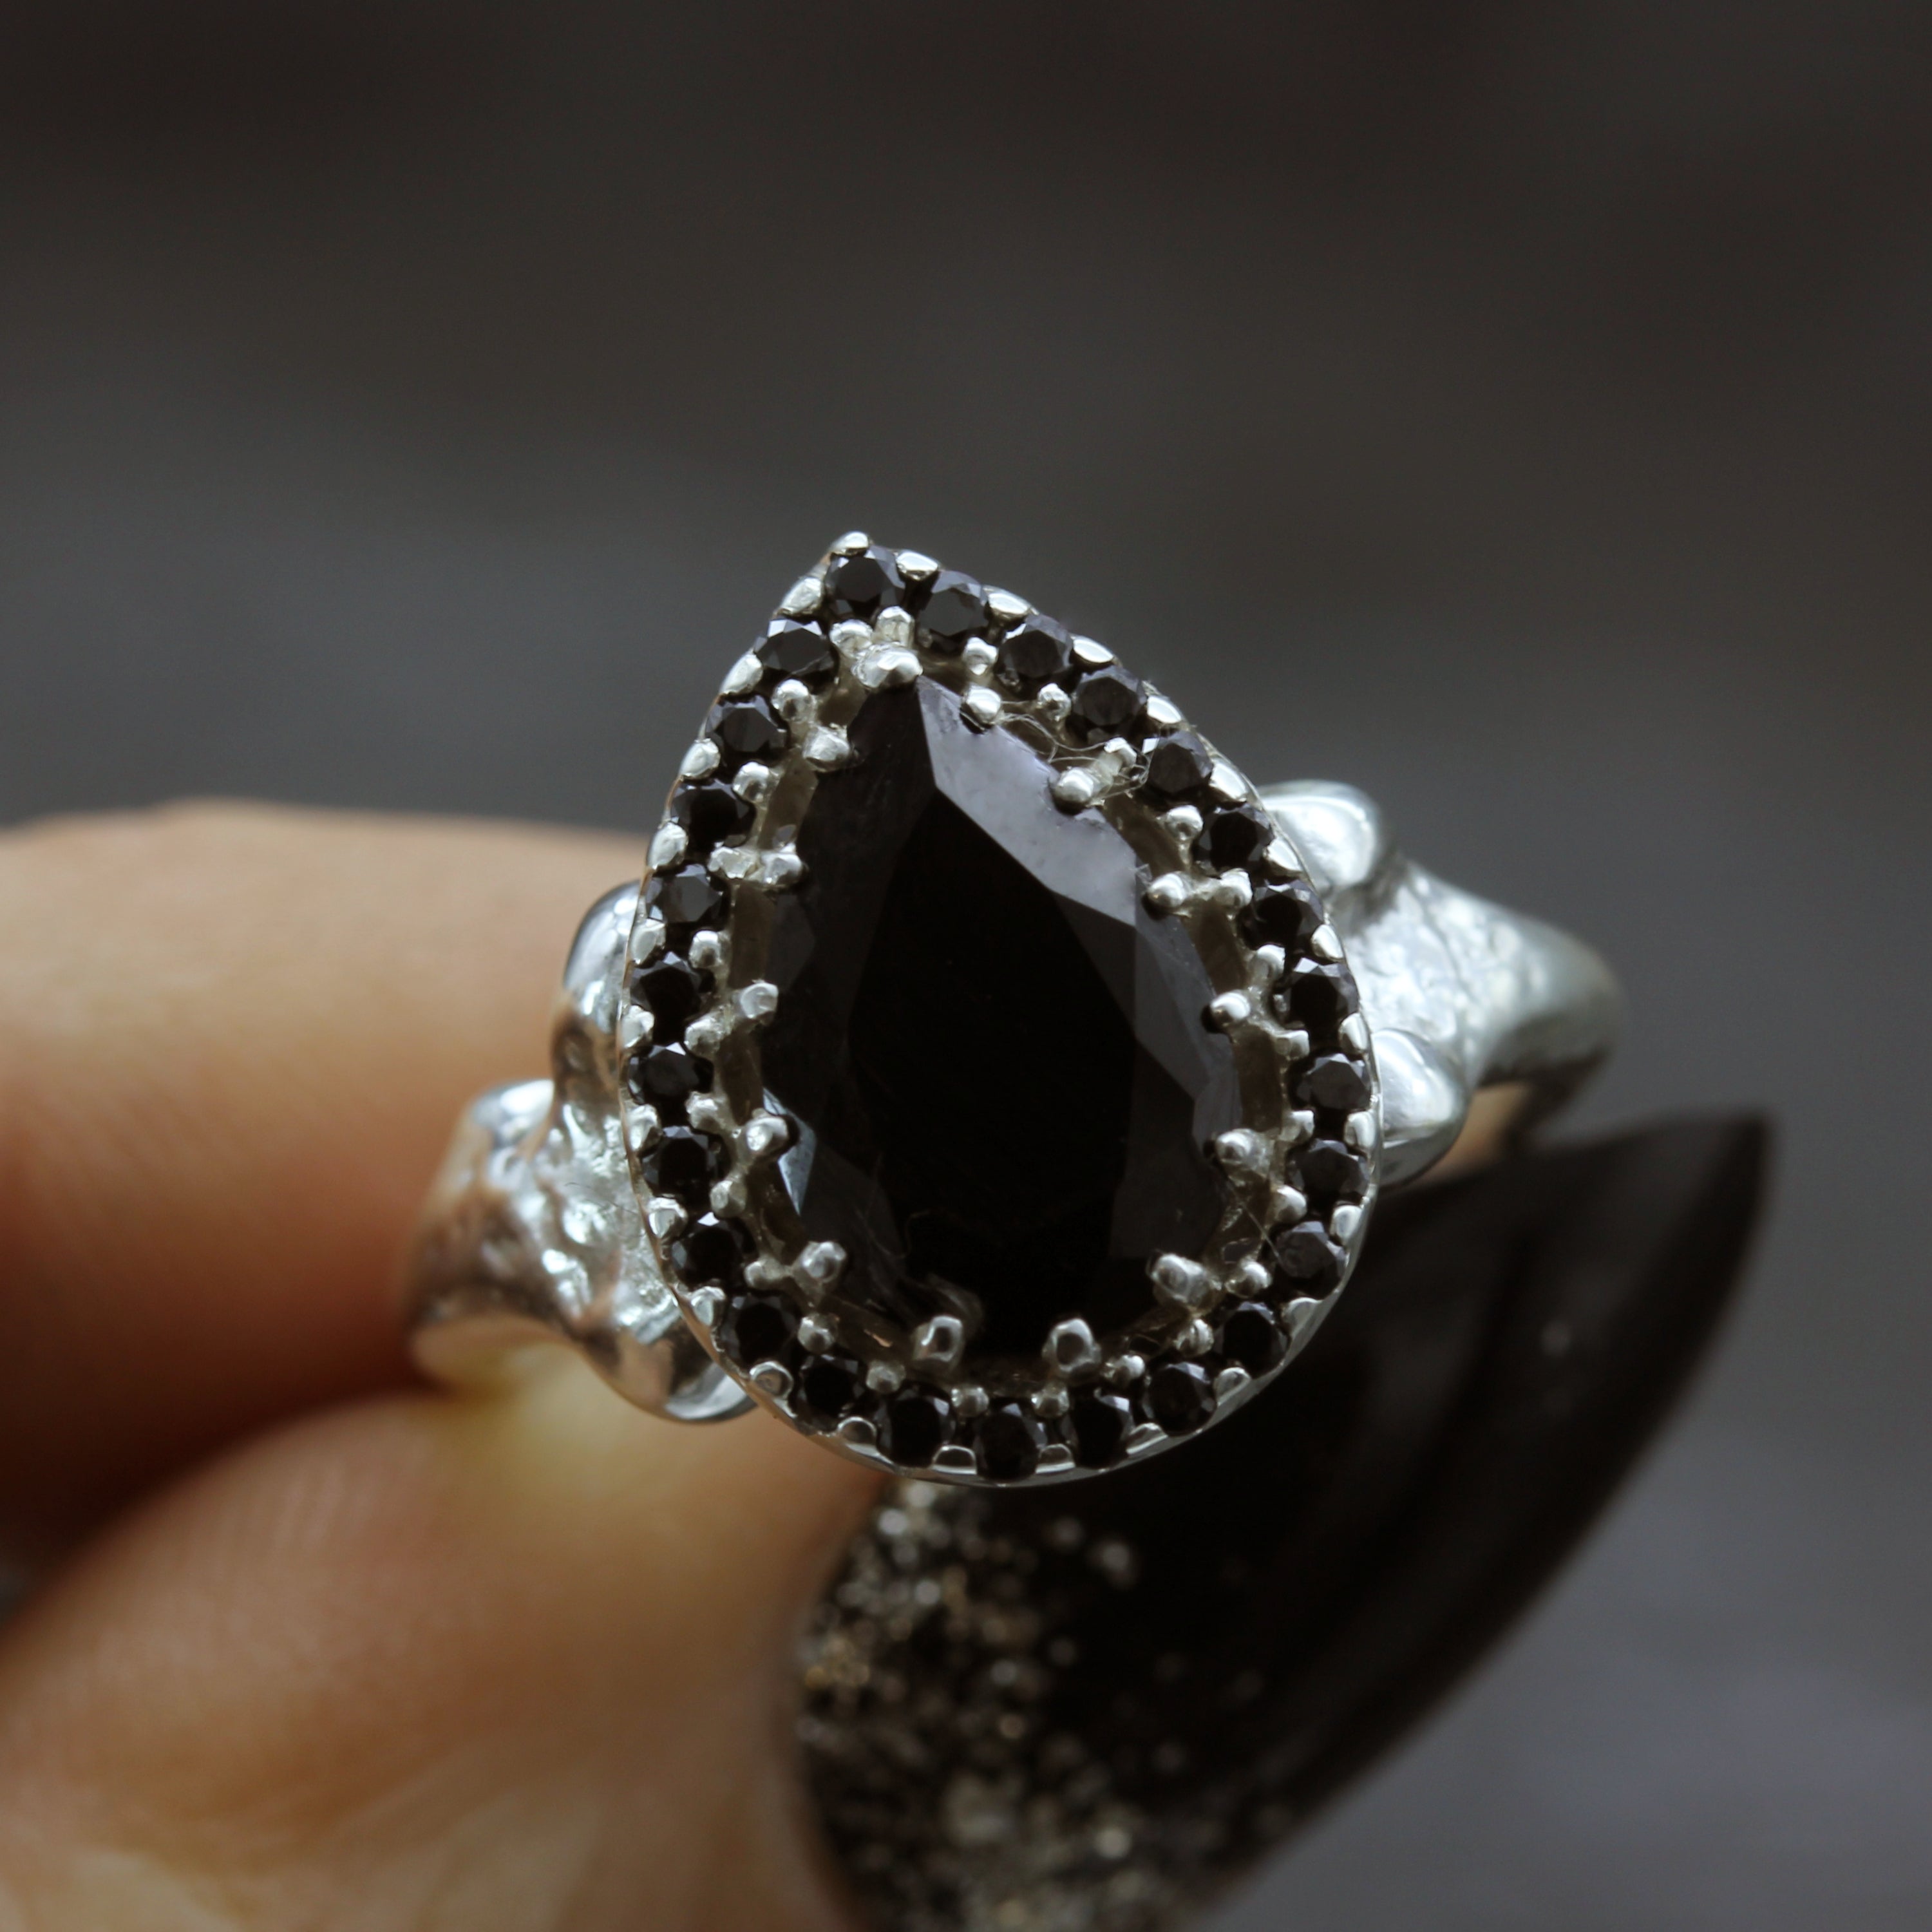 Gothic Bone Engagement Ring